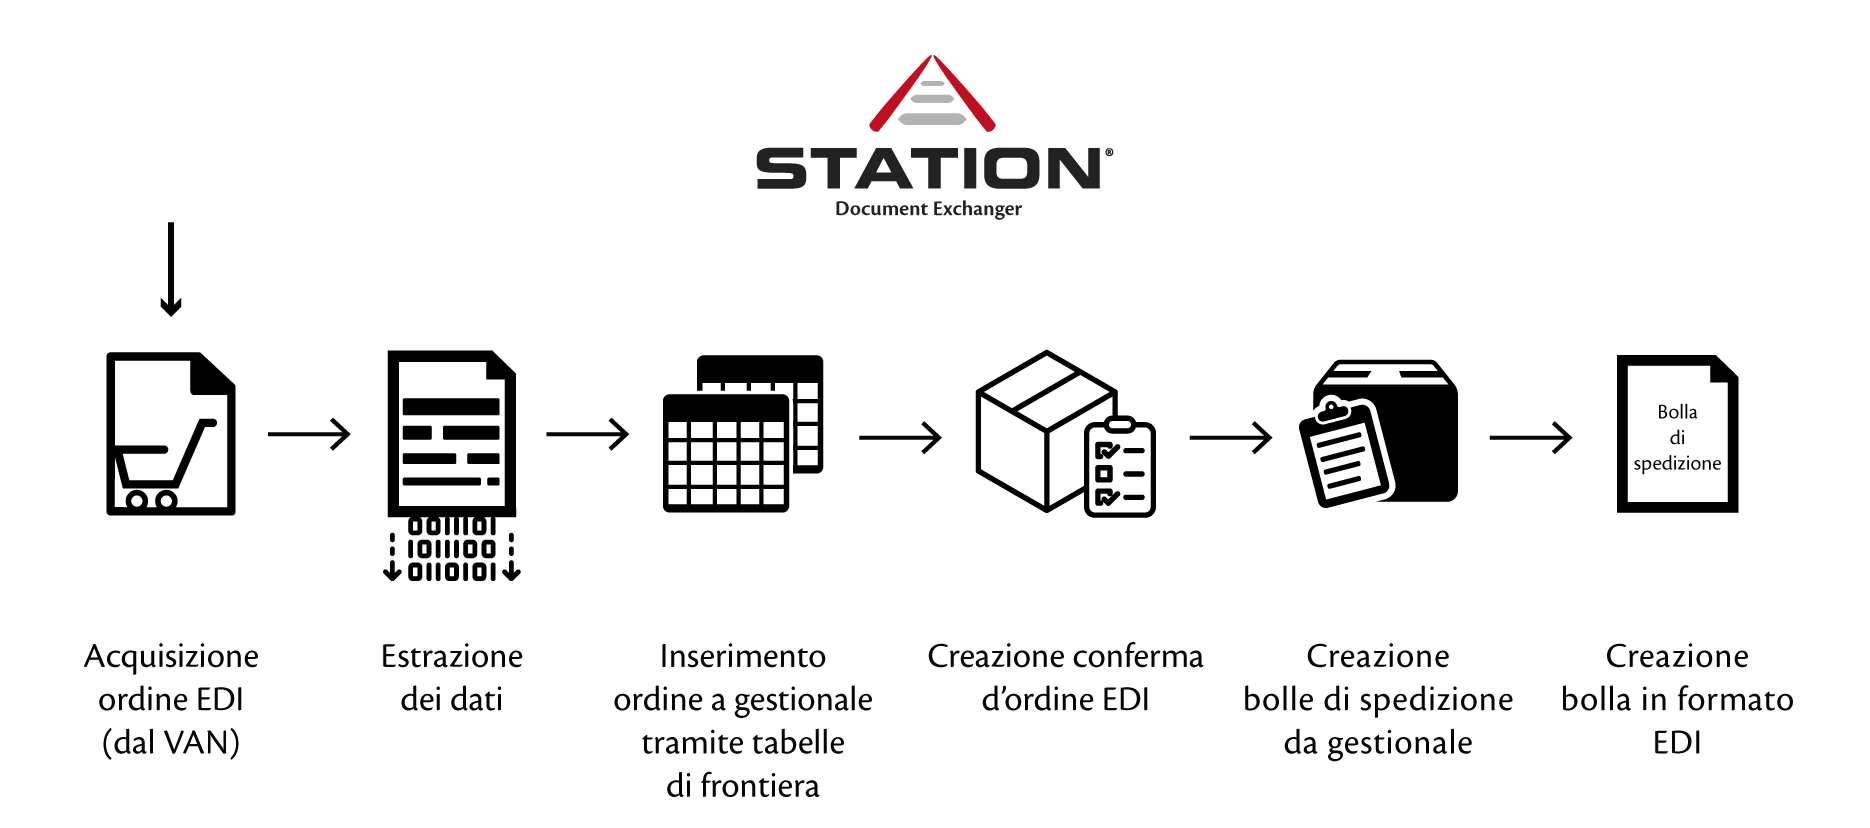 case afvbeltrame station2x